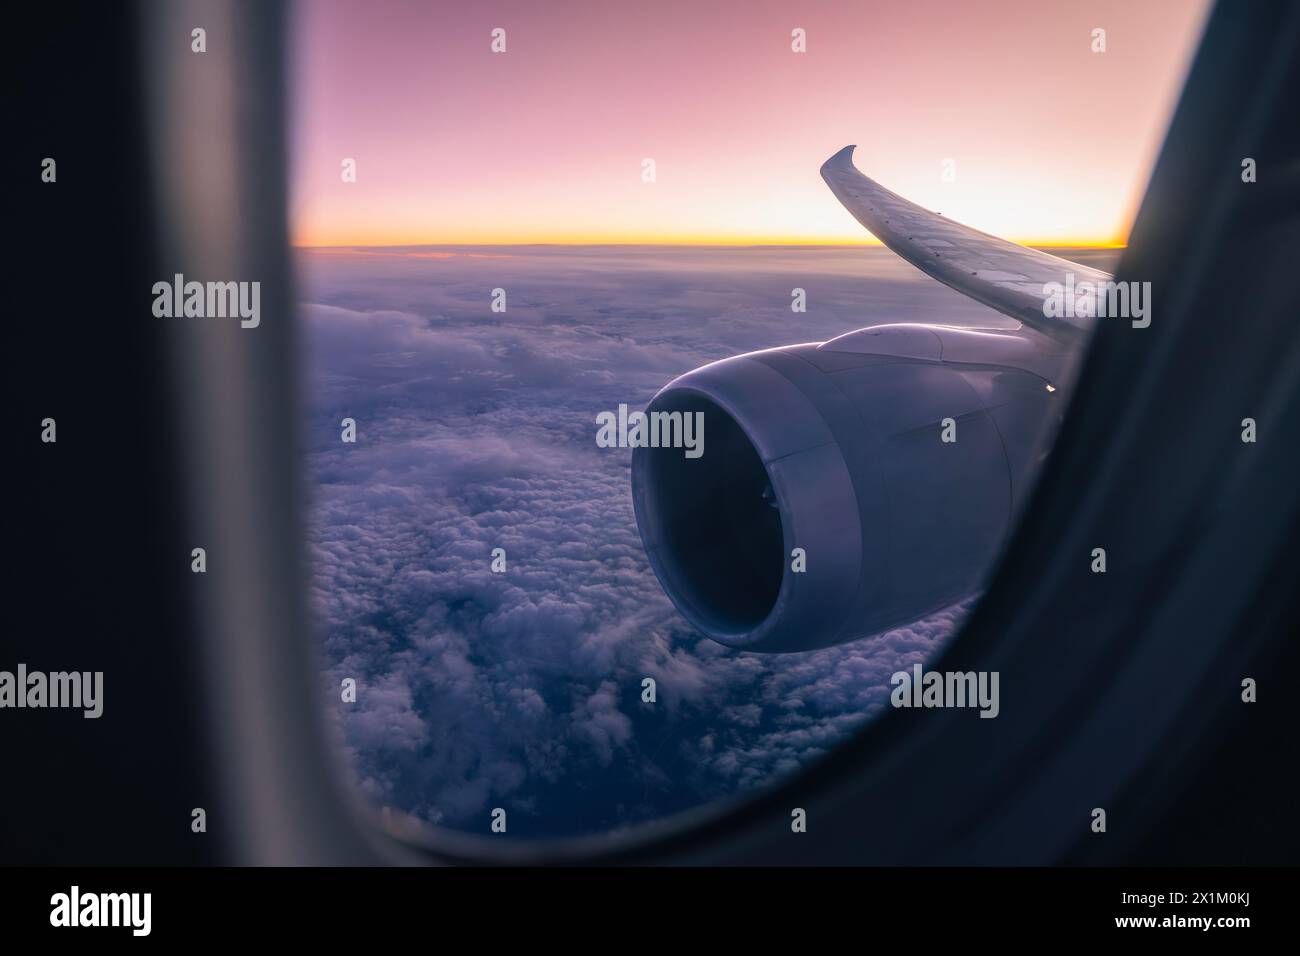 Wunderschöner Blick vom Flugzeugfenster über den Düsenmotor und den Flügel. Flugzeuge fliegen hoch über Wolken während der Dämmerung.Themen Luftfahrt, Reise und Verbindung. Stockfoto